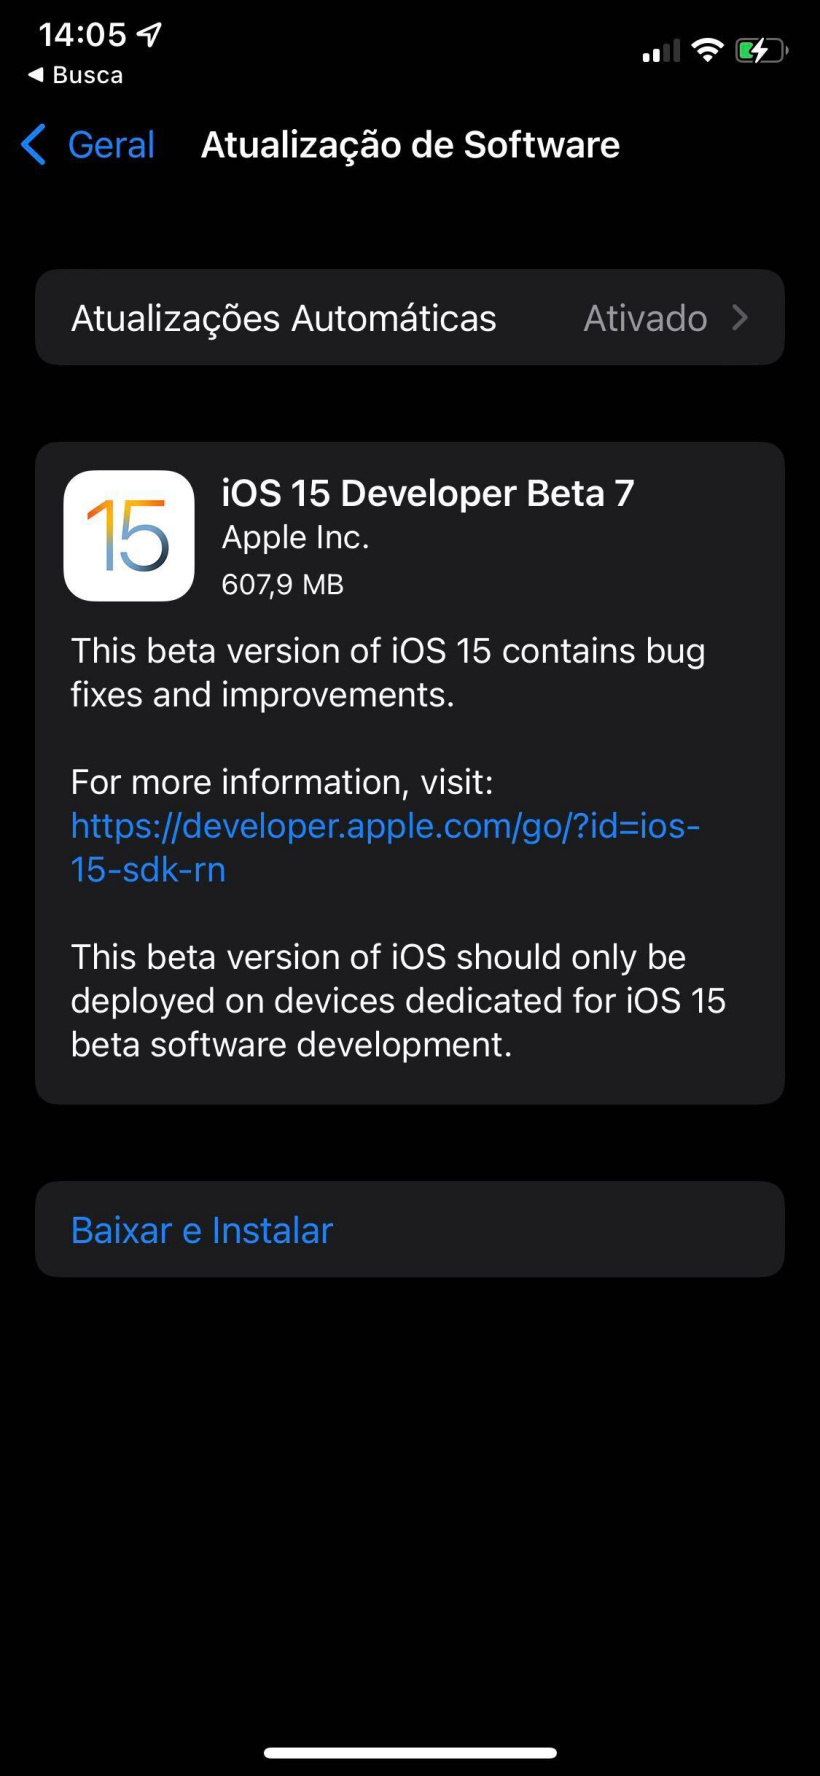 苹果 iOS 15/iPadOS 15 开发者预览版/公测版 Beta 7 发布